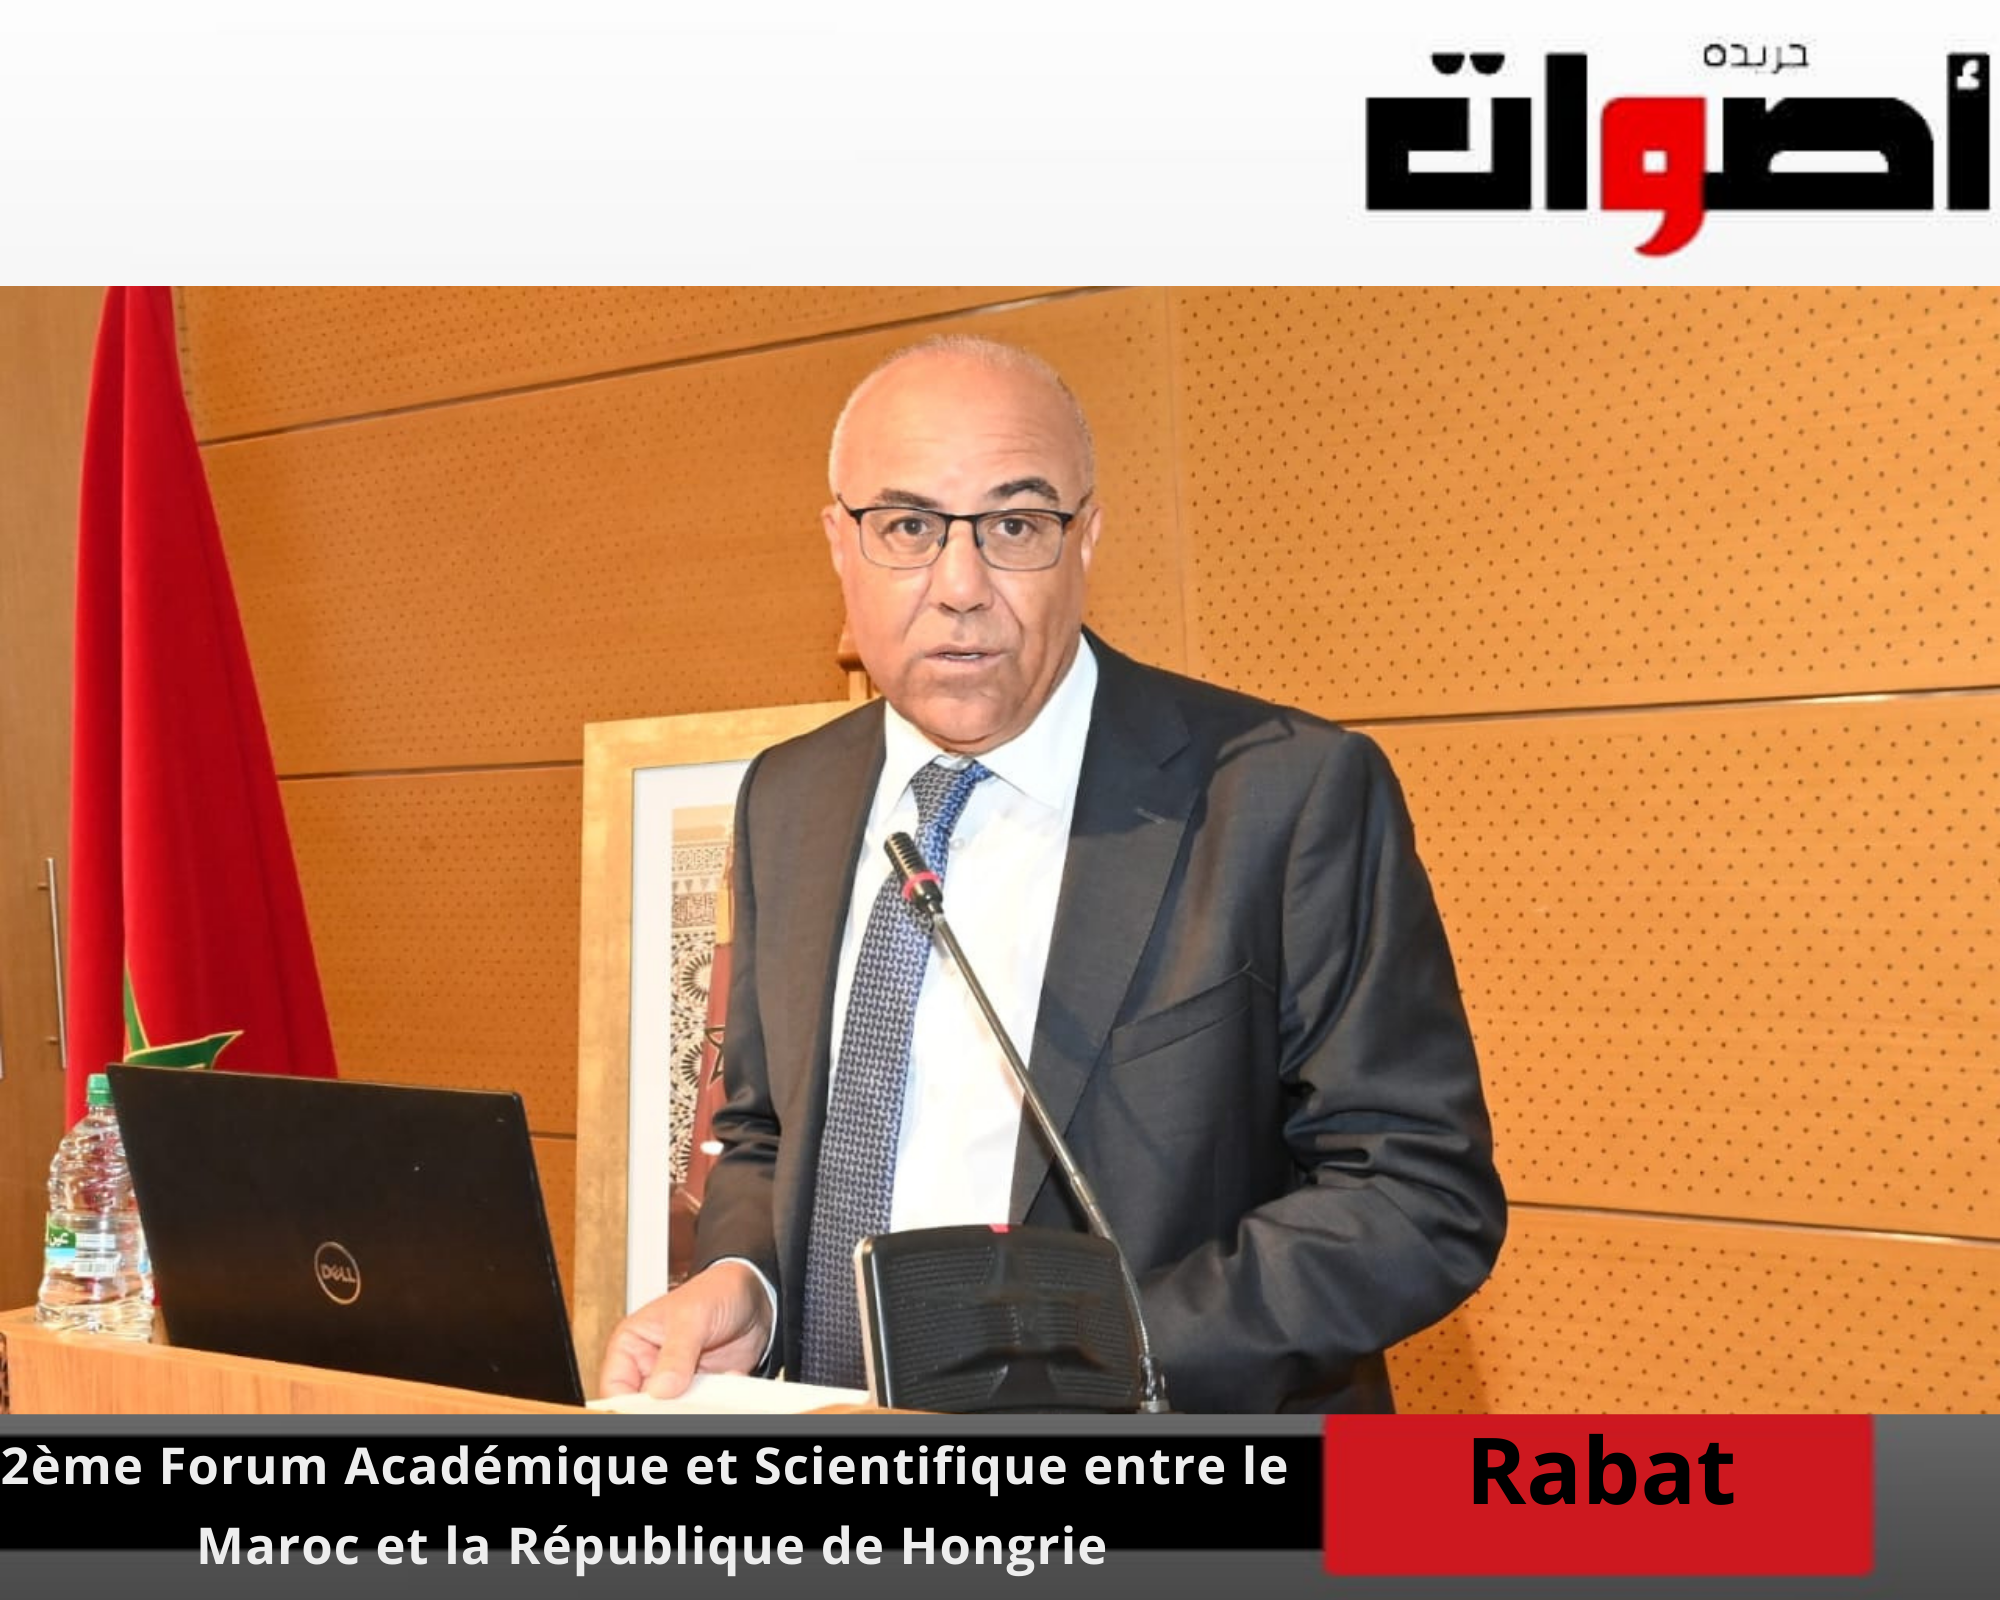 2ème Forum Académique et Scientifiqueentre le Royaume du Maroc et la République de Hongrie